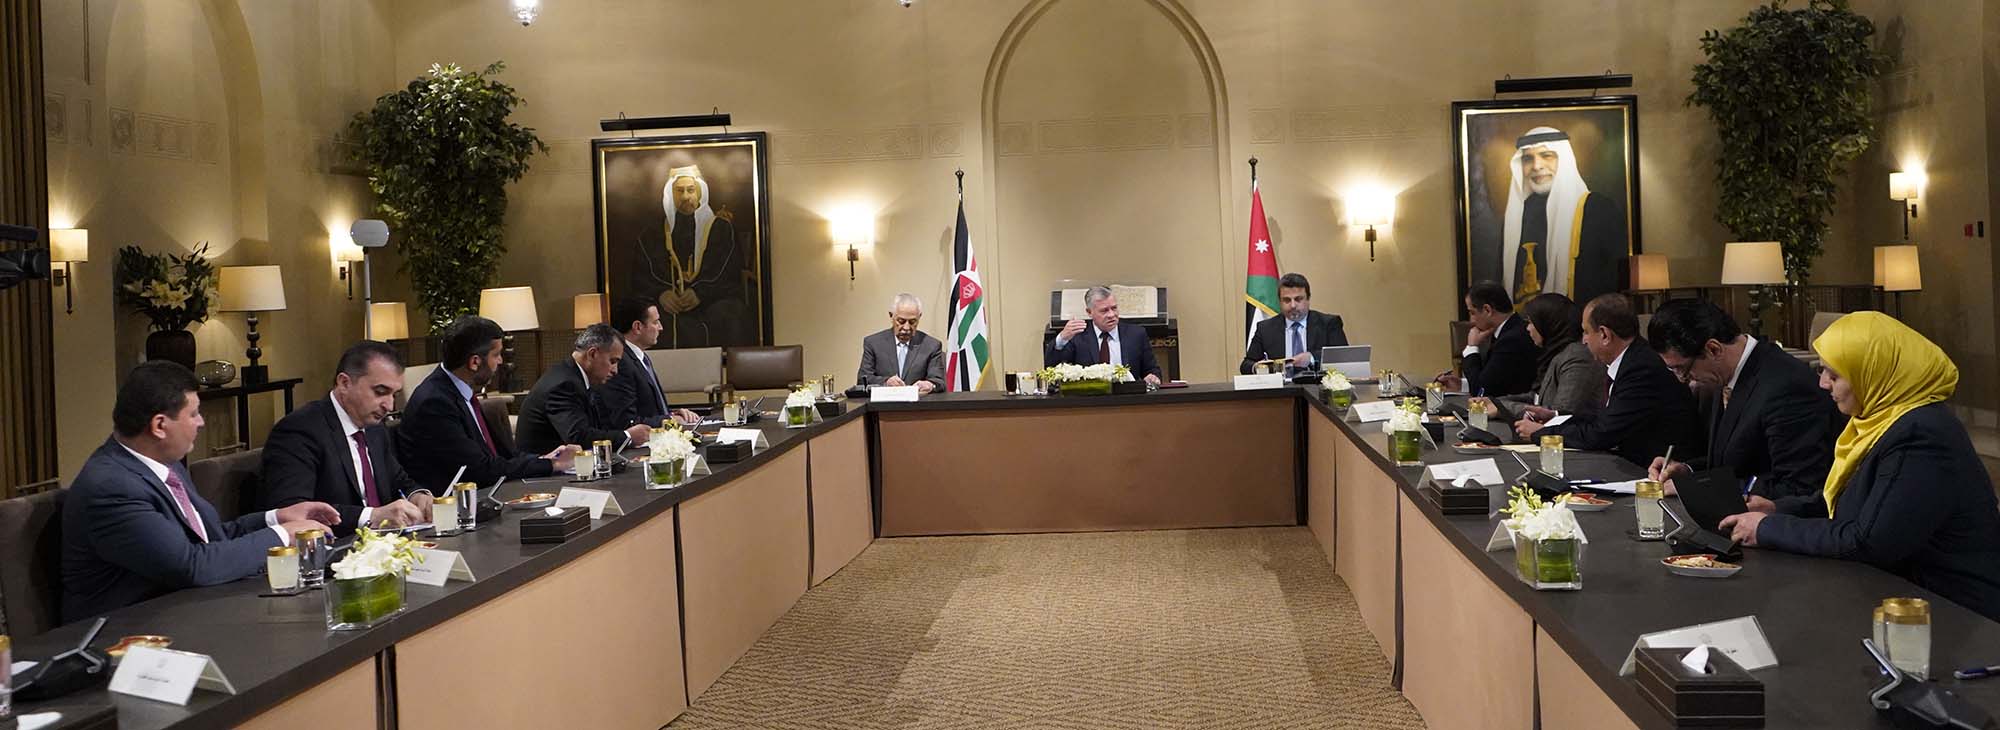 جلالة الملك عبدالله الثاني يلتقي رئيس وأعضاء كتلة المستقبل النيابية